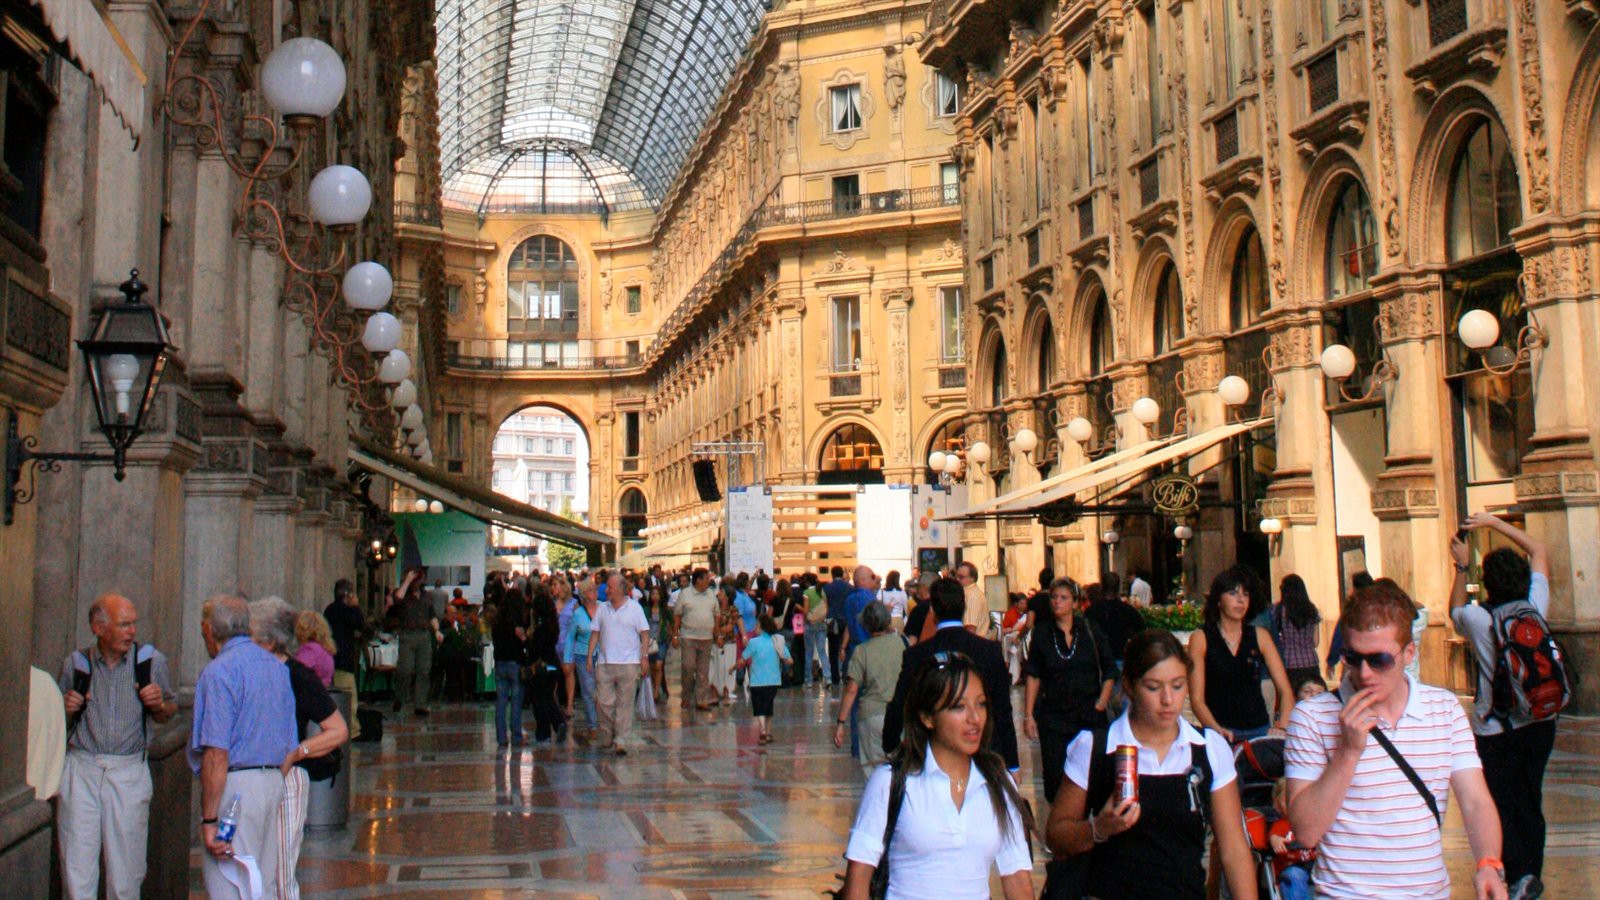 Trussardi passeggiata in Galleria Vittorio Emanuele II реклама